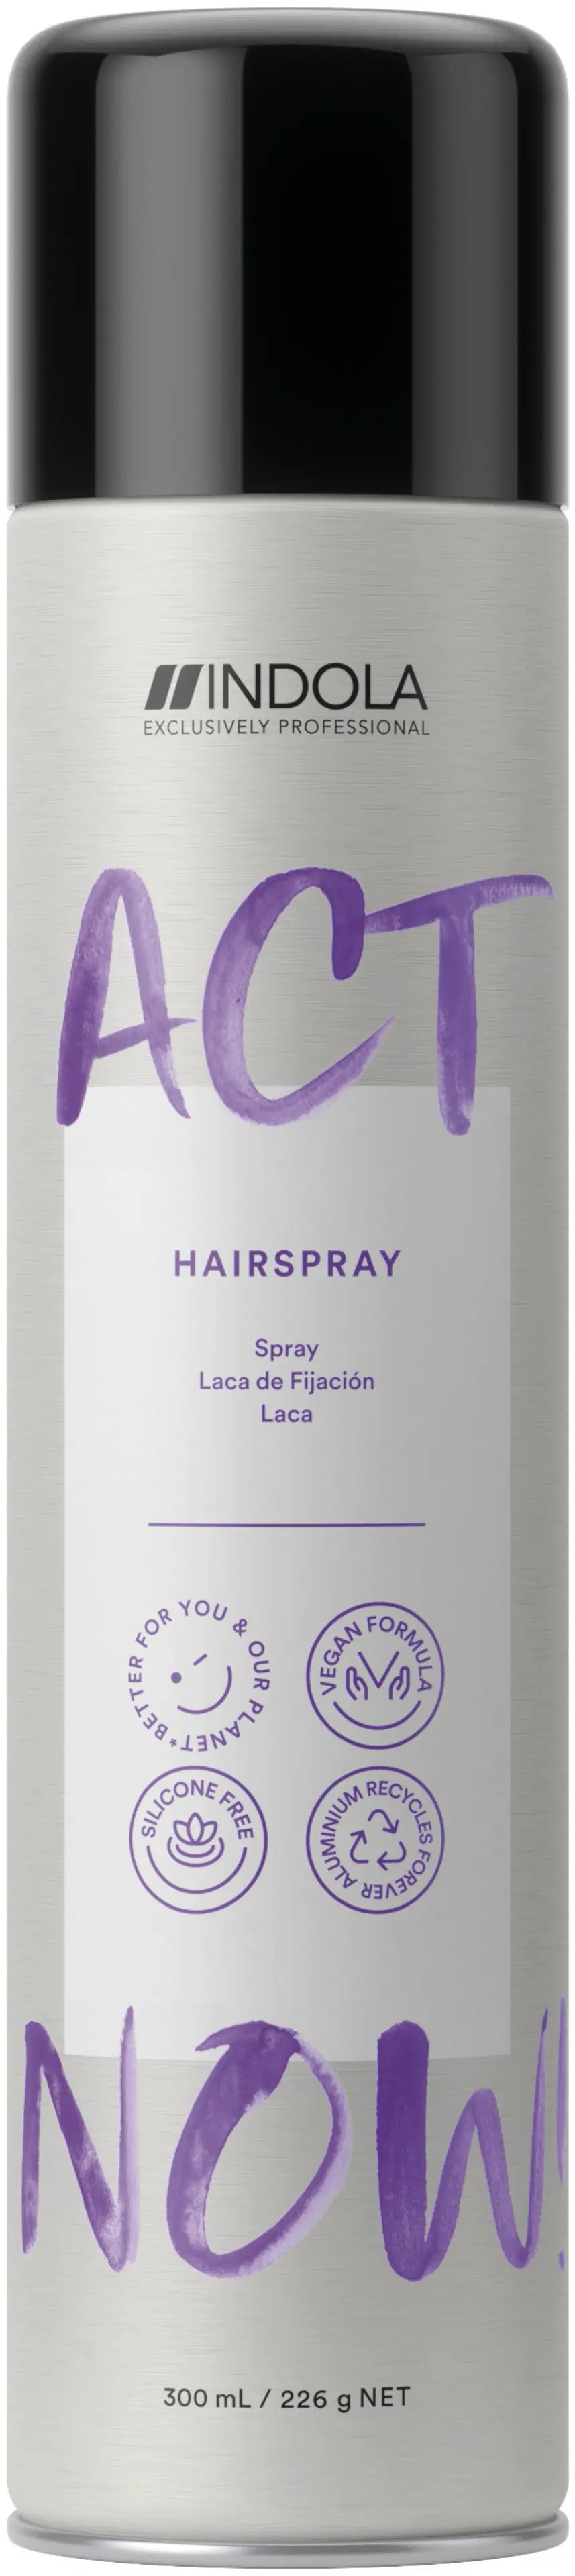 Indola ACT NOW! Strong Hairspray hiuskiinne 300 ml